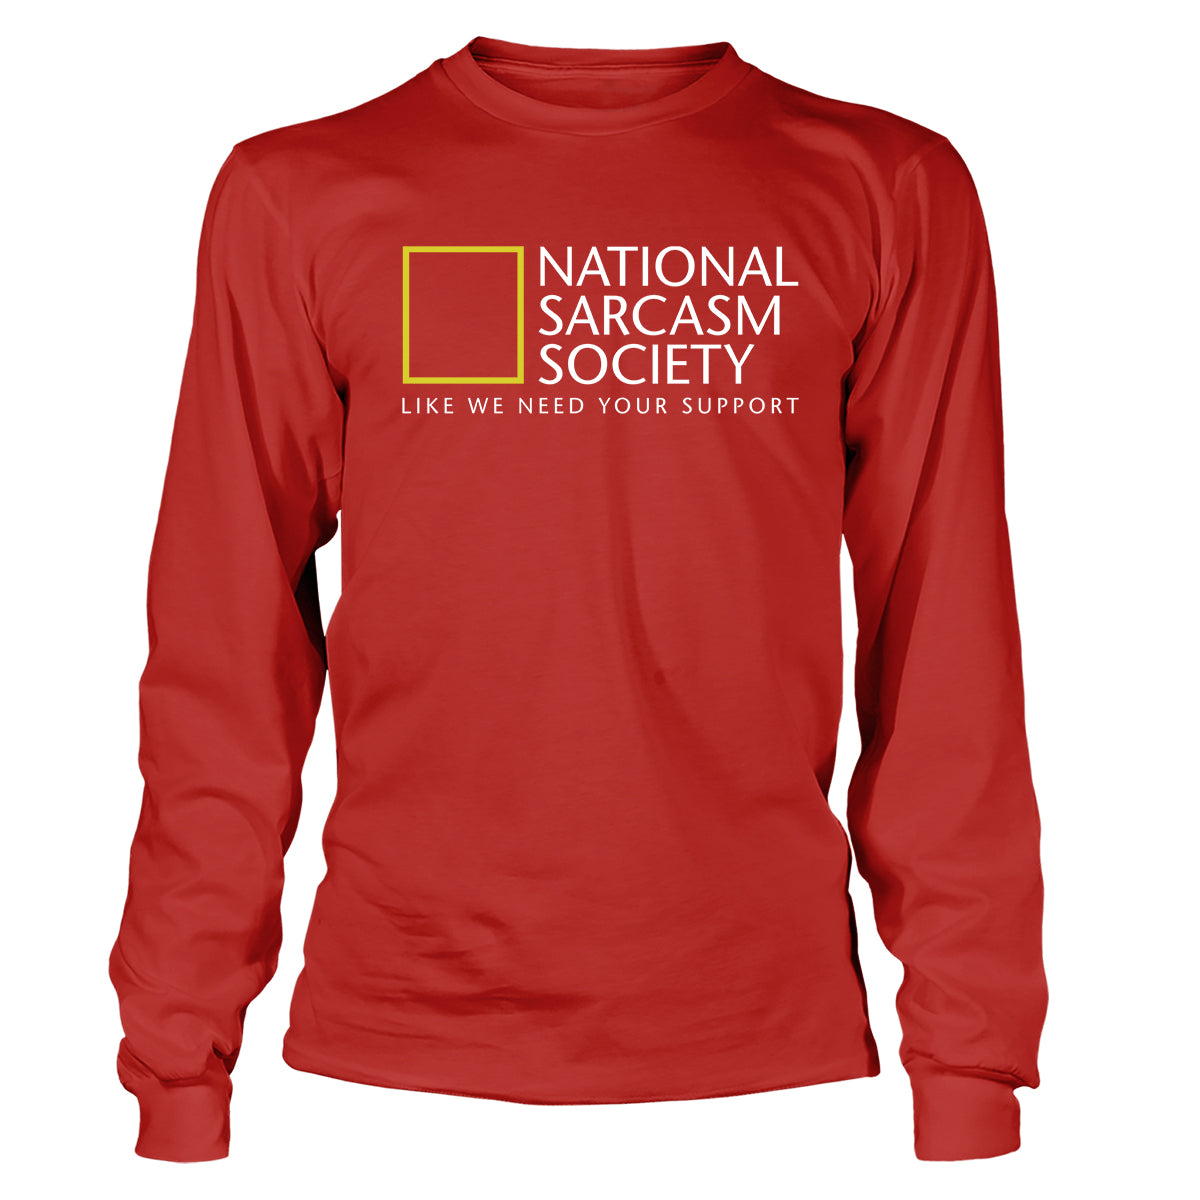 National Sarcasm Society Long Sleeve T-Shirt